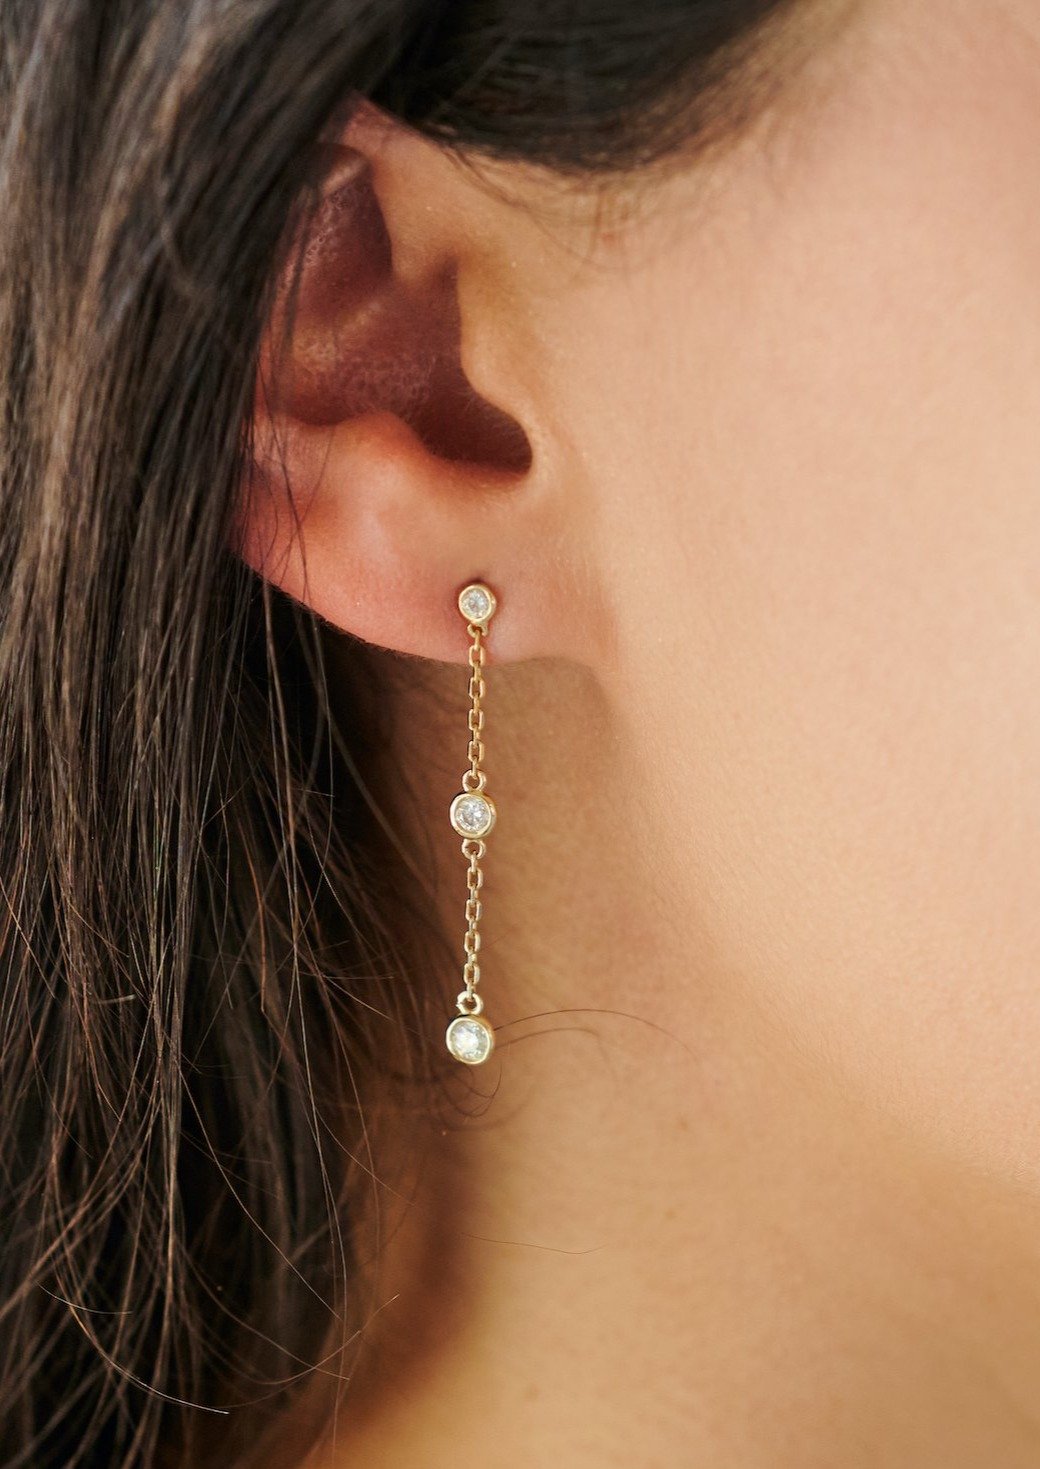 Diamonds by the Inch Earrings